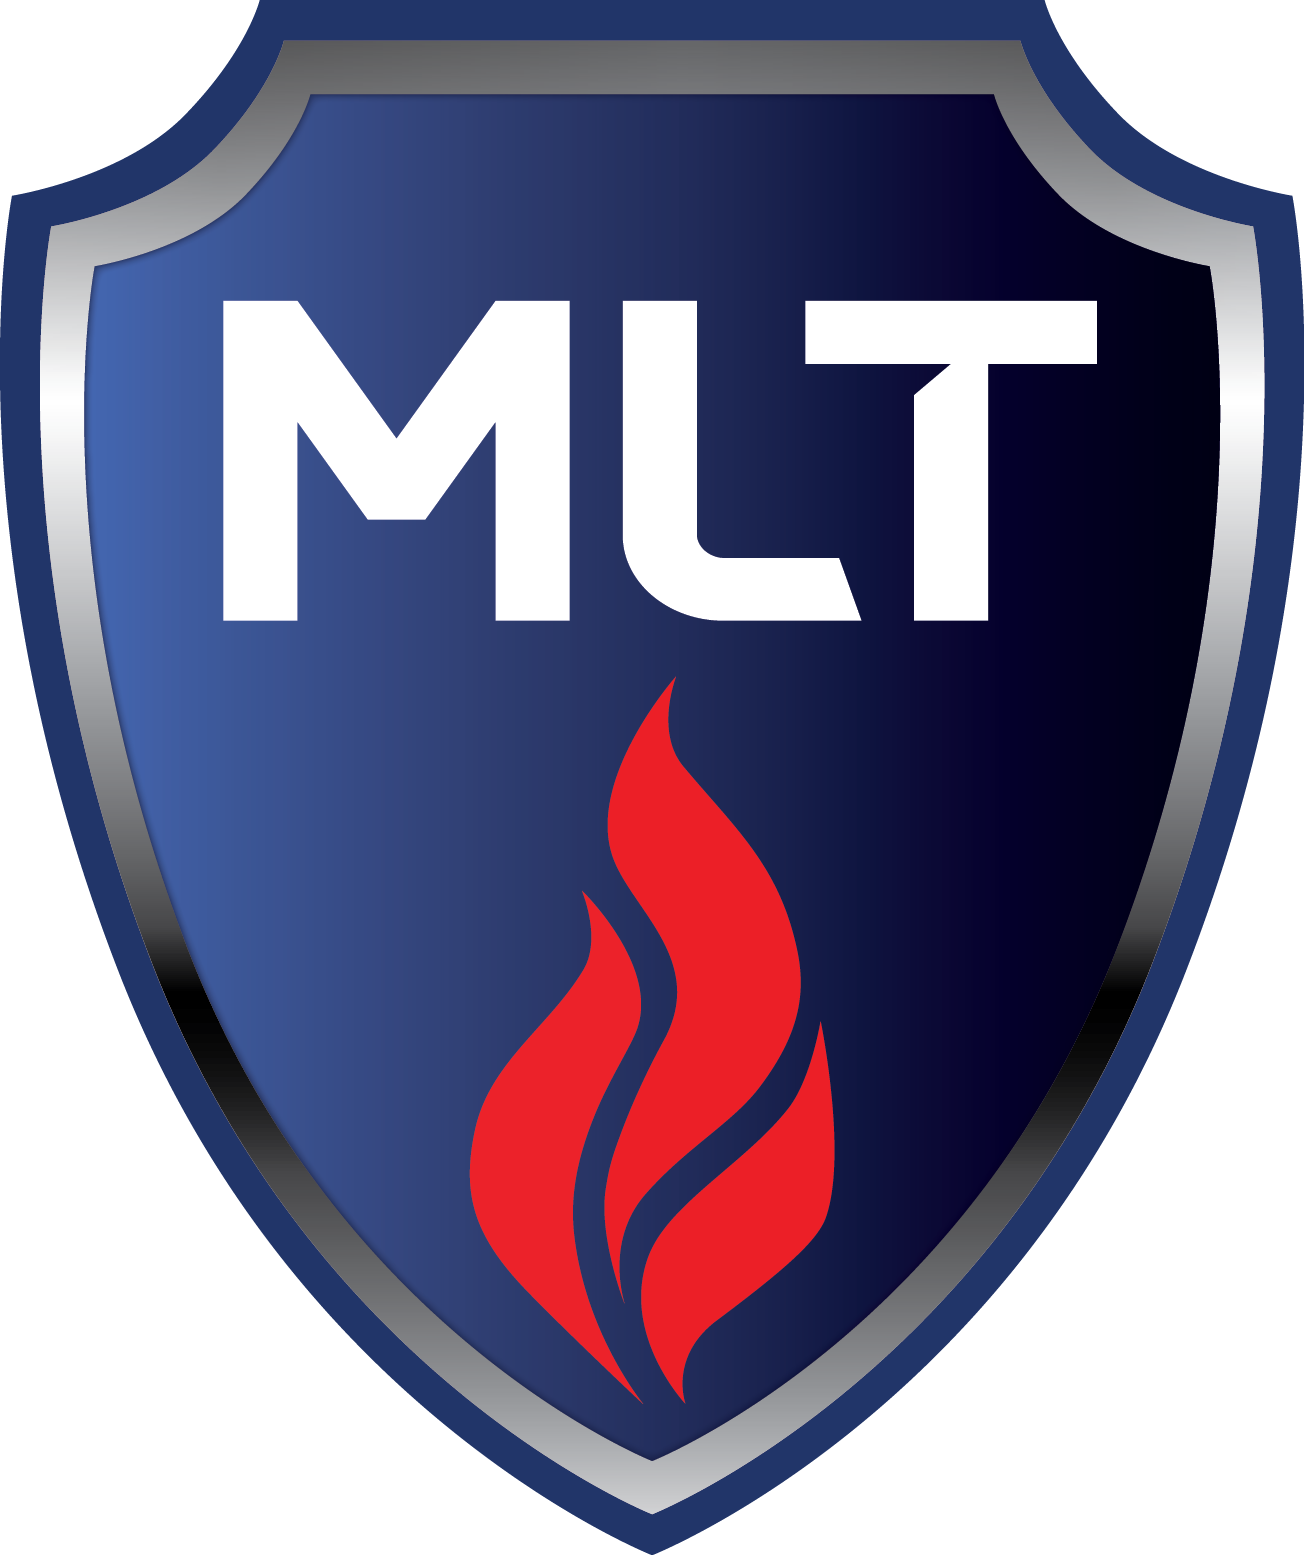 Mlt standard logo